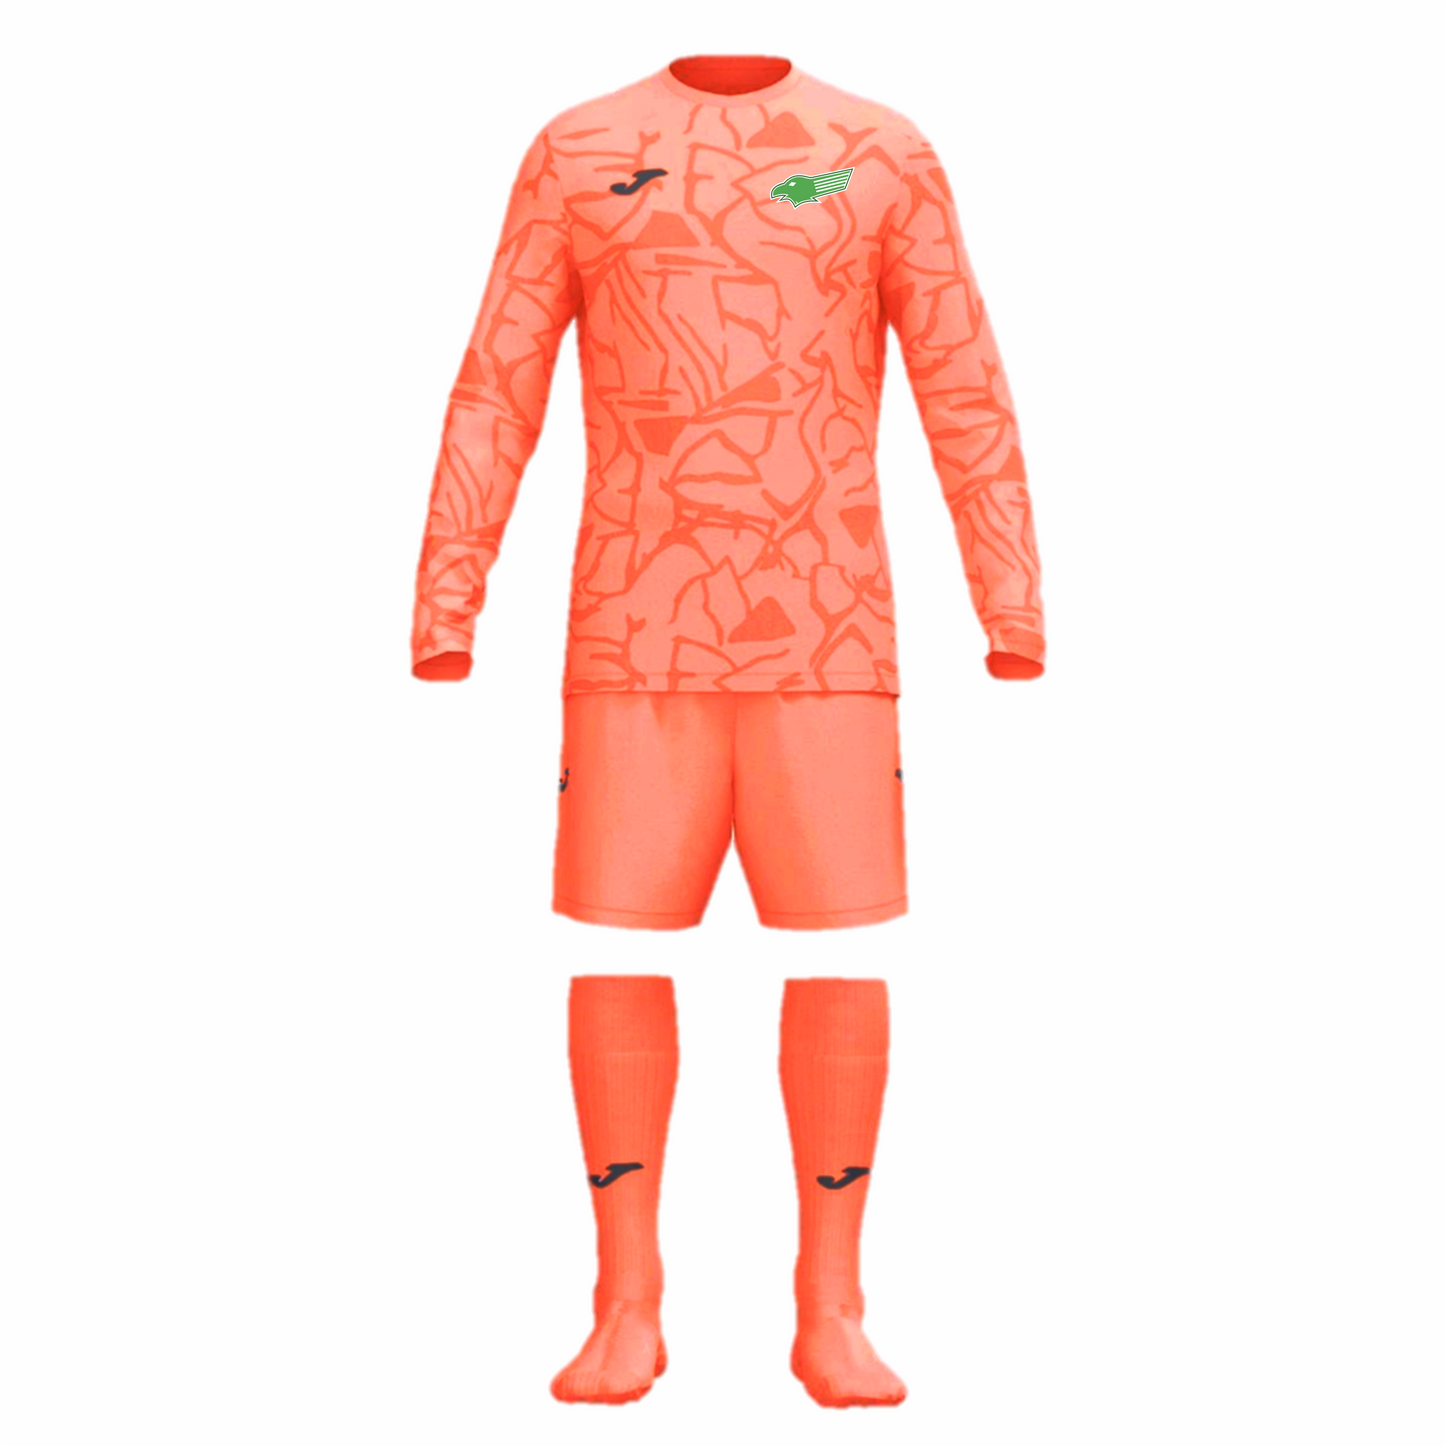 Kewford Eagles Goal Keeper Kit Pack - Orange